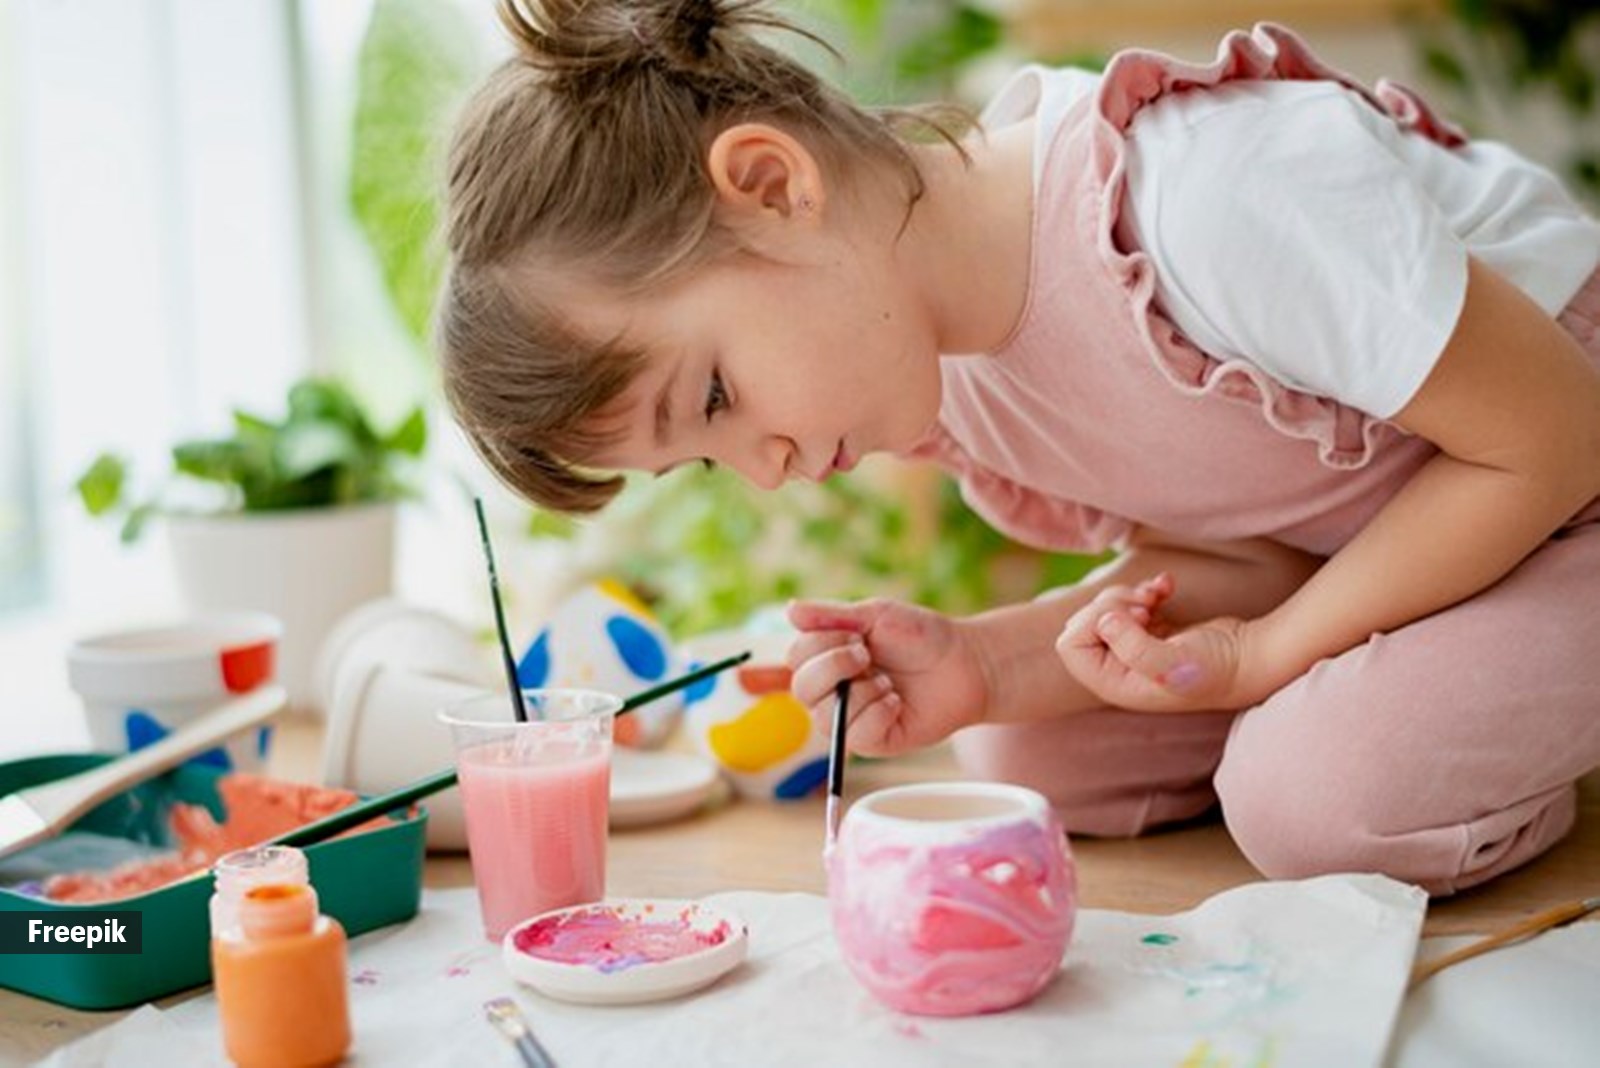 Encouraging children's creativity through art,Nurturing creativity in kids, Art activities for children